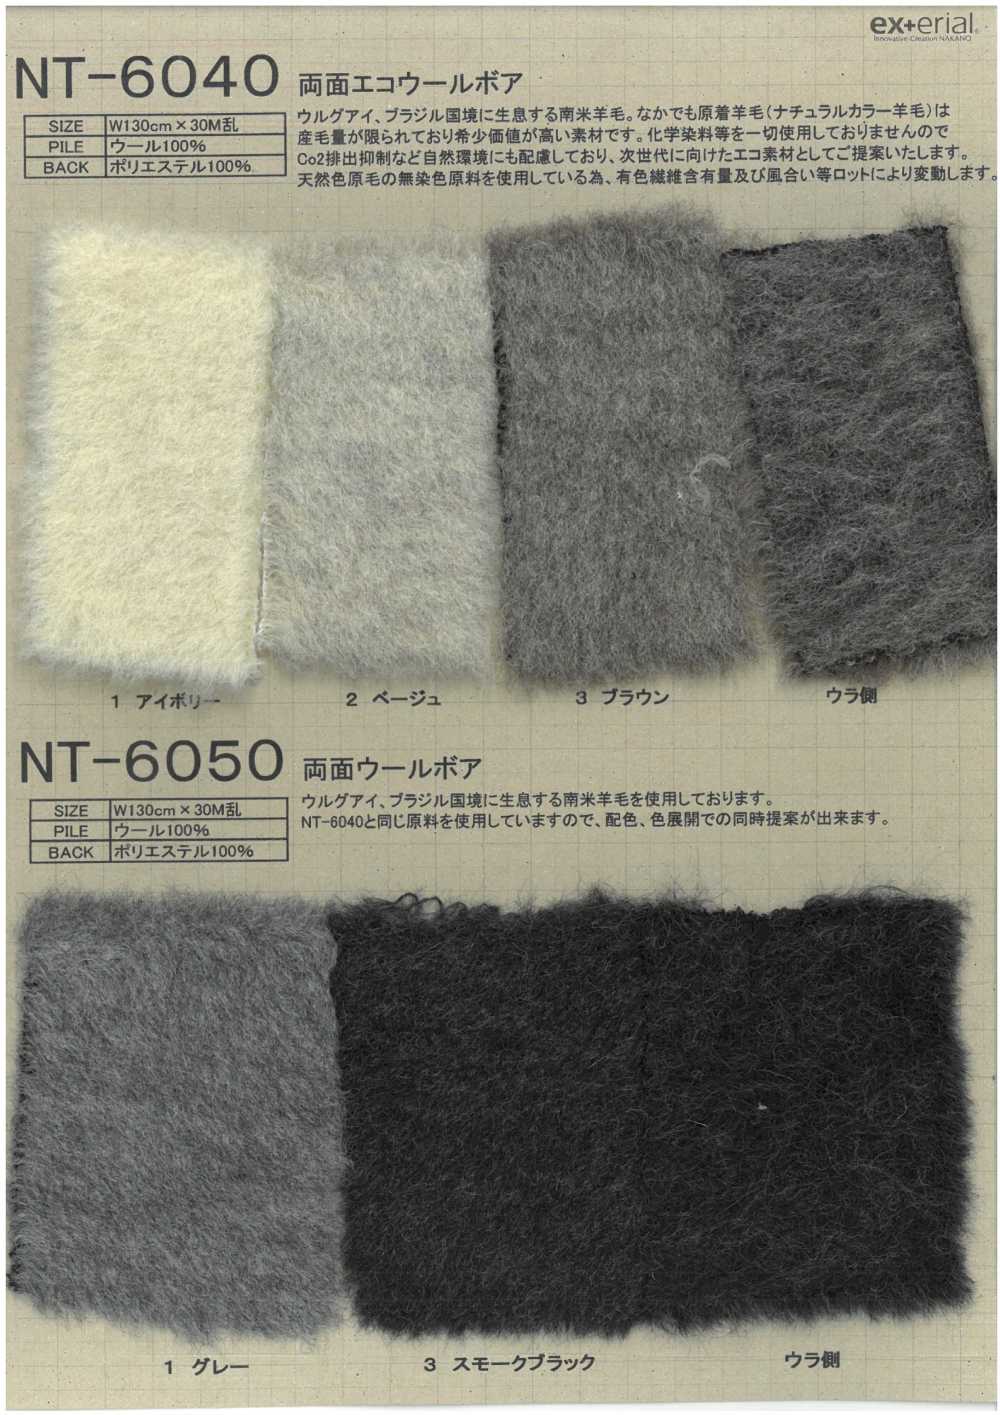 NT-6040 工藝毛皮【雙面生態羊毛圍巾】[面料] 中野襪業